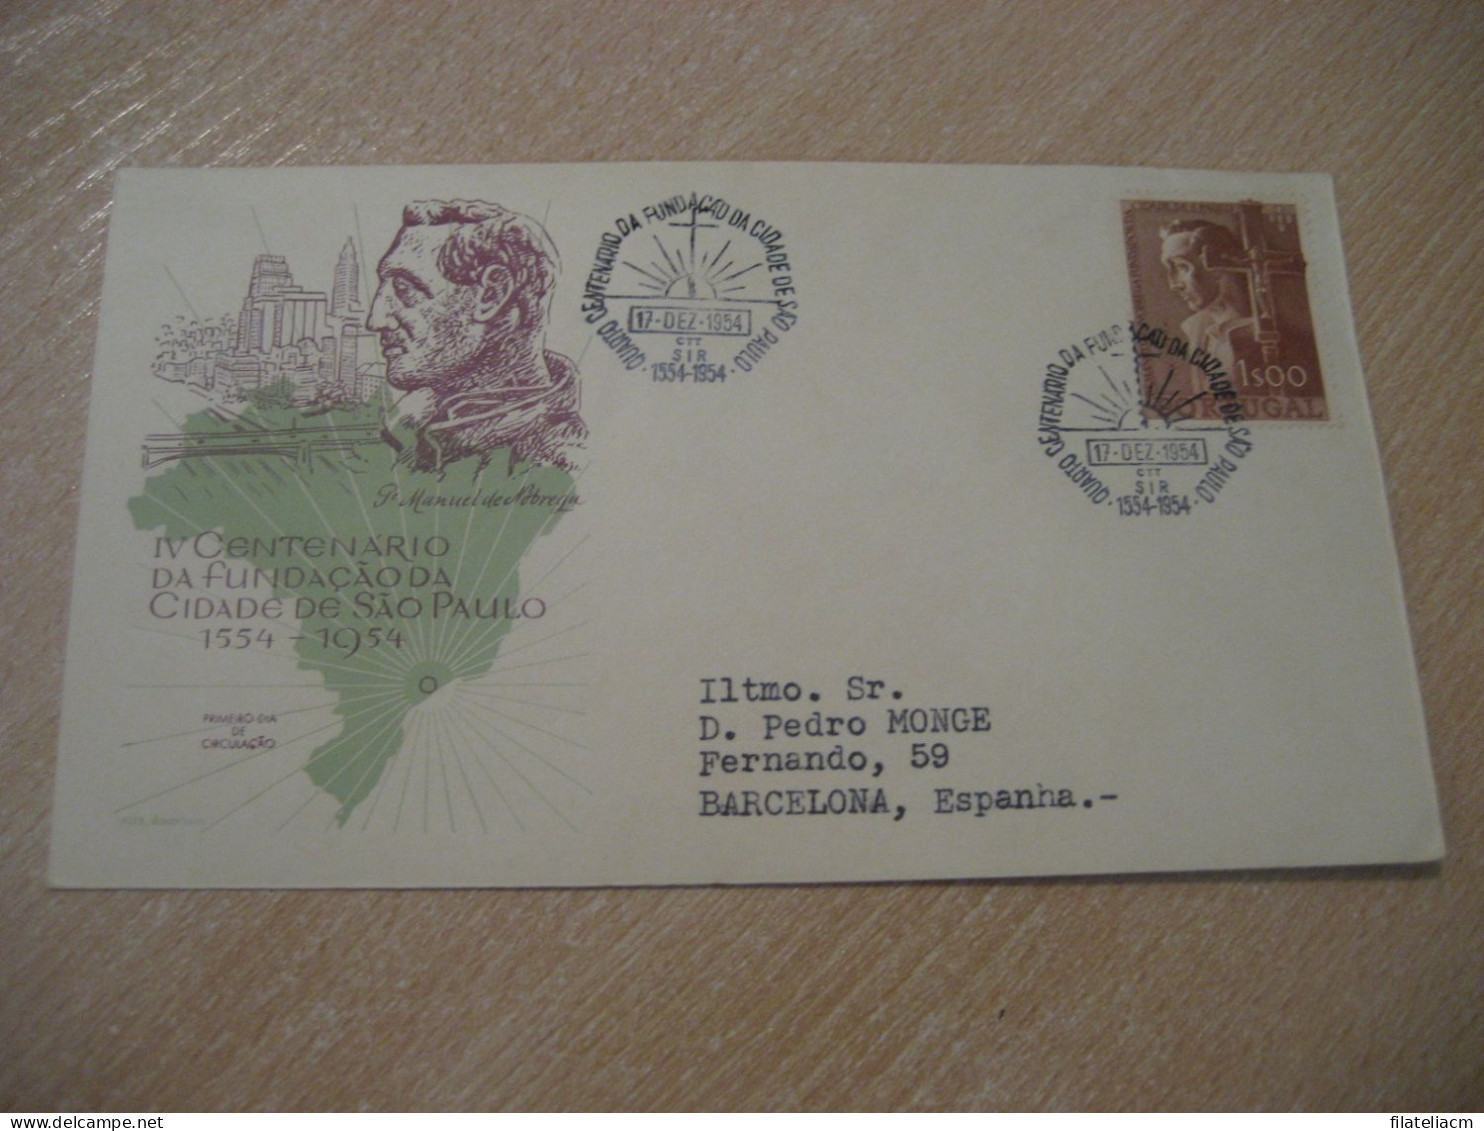 CTT SIR 1954 Manuel De Nobrega Founder SAO PAULO Brasil City FDC Cancel Cover PORTUGAL - Brieven En Documenten